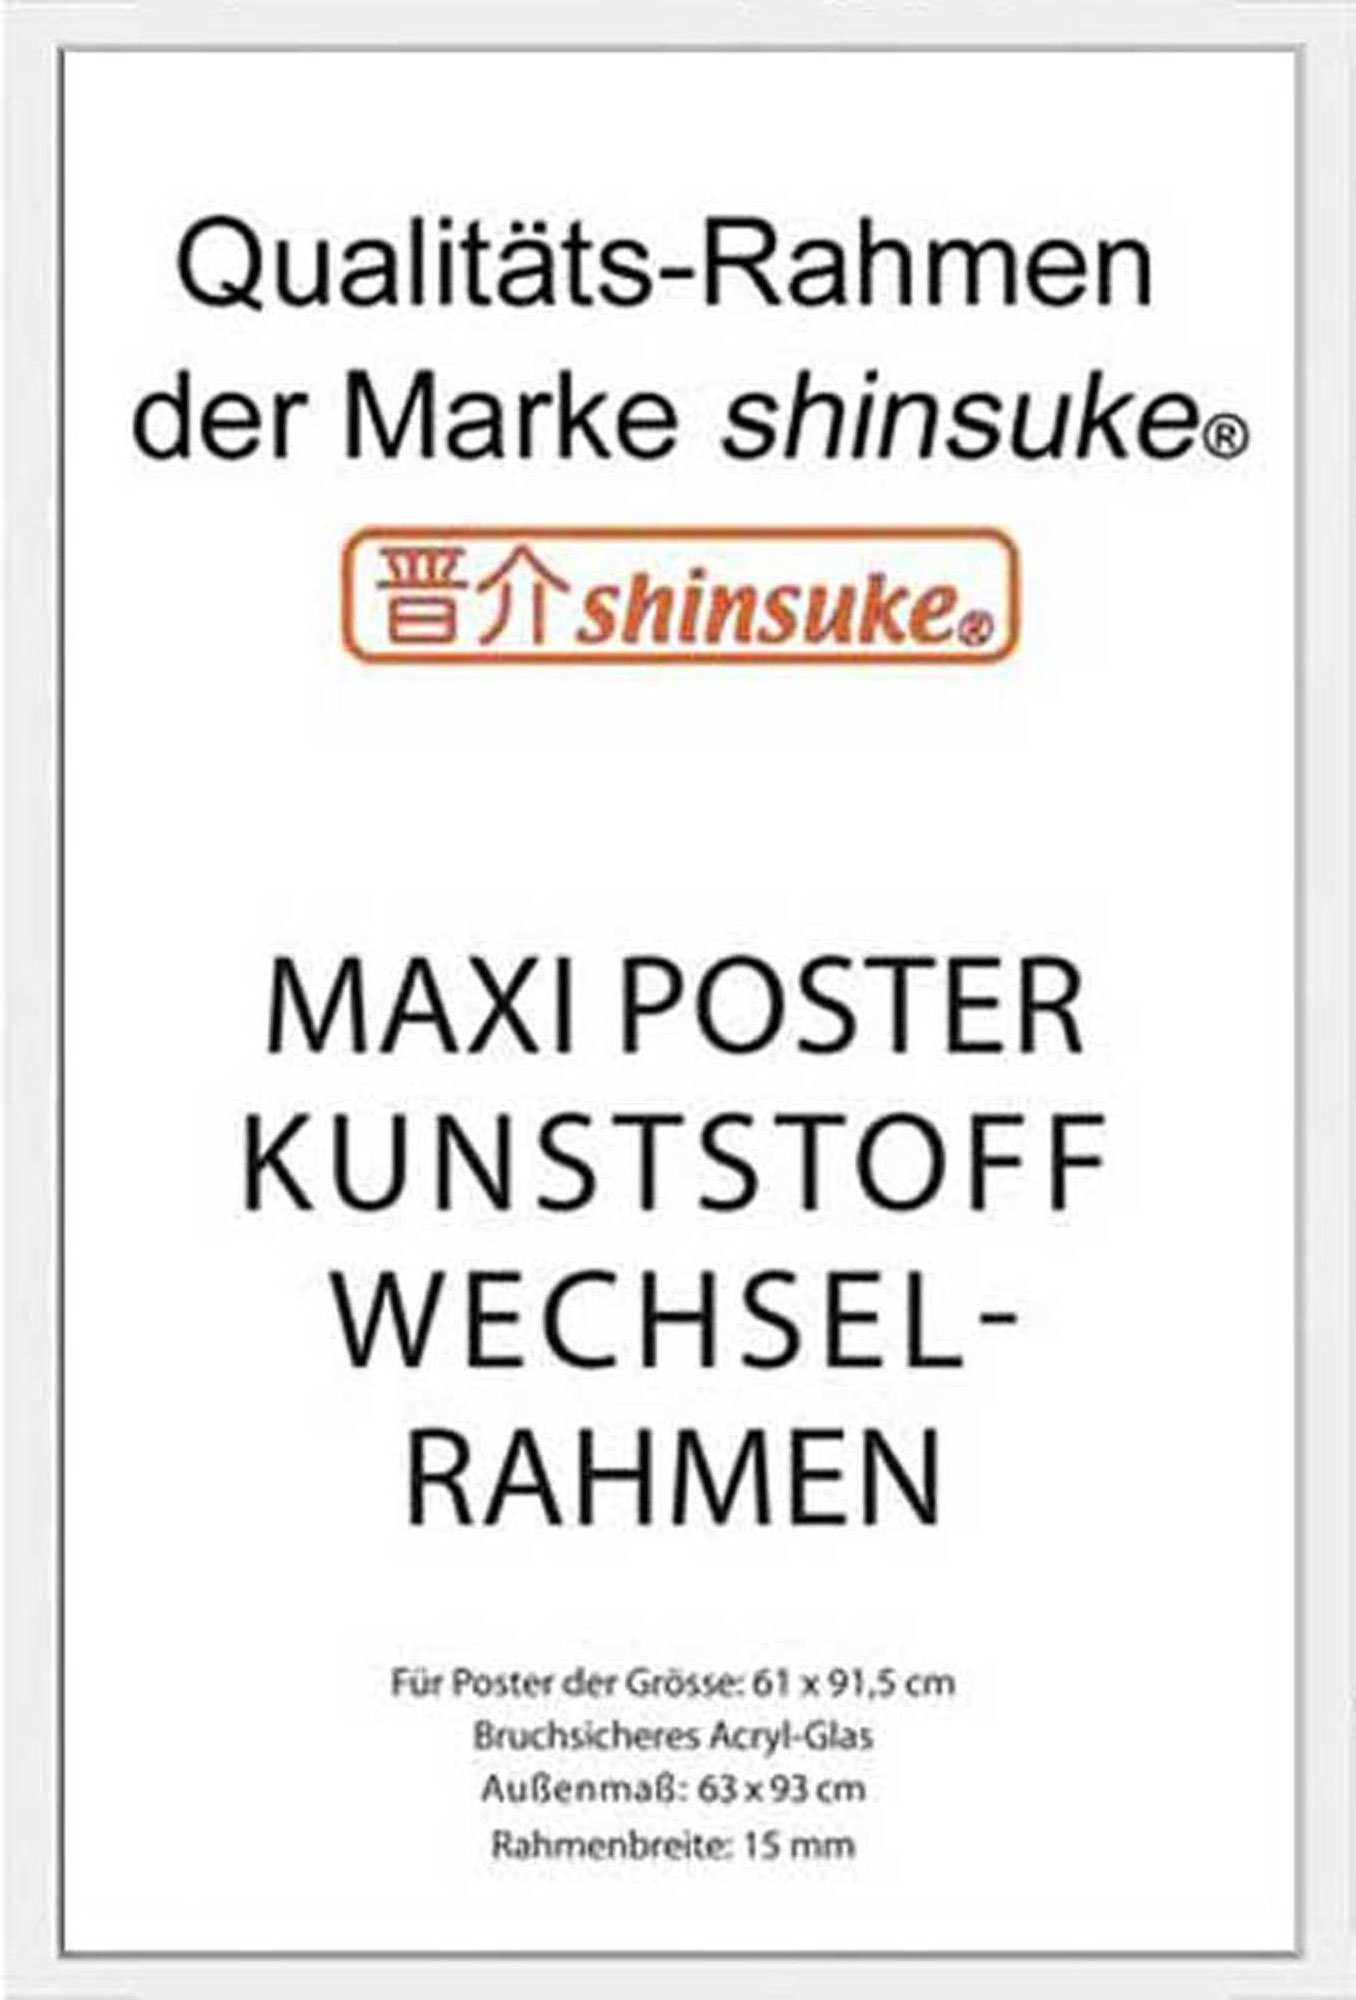 empireposter Rahmen Posterrahmen Wechselrahmen Shinsuke® Maxi-Poster Profil: 15mm Kunststoff 61x91,5cm, Farbe weiss mit Acryl-Scheibe